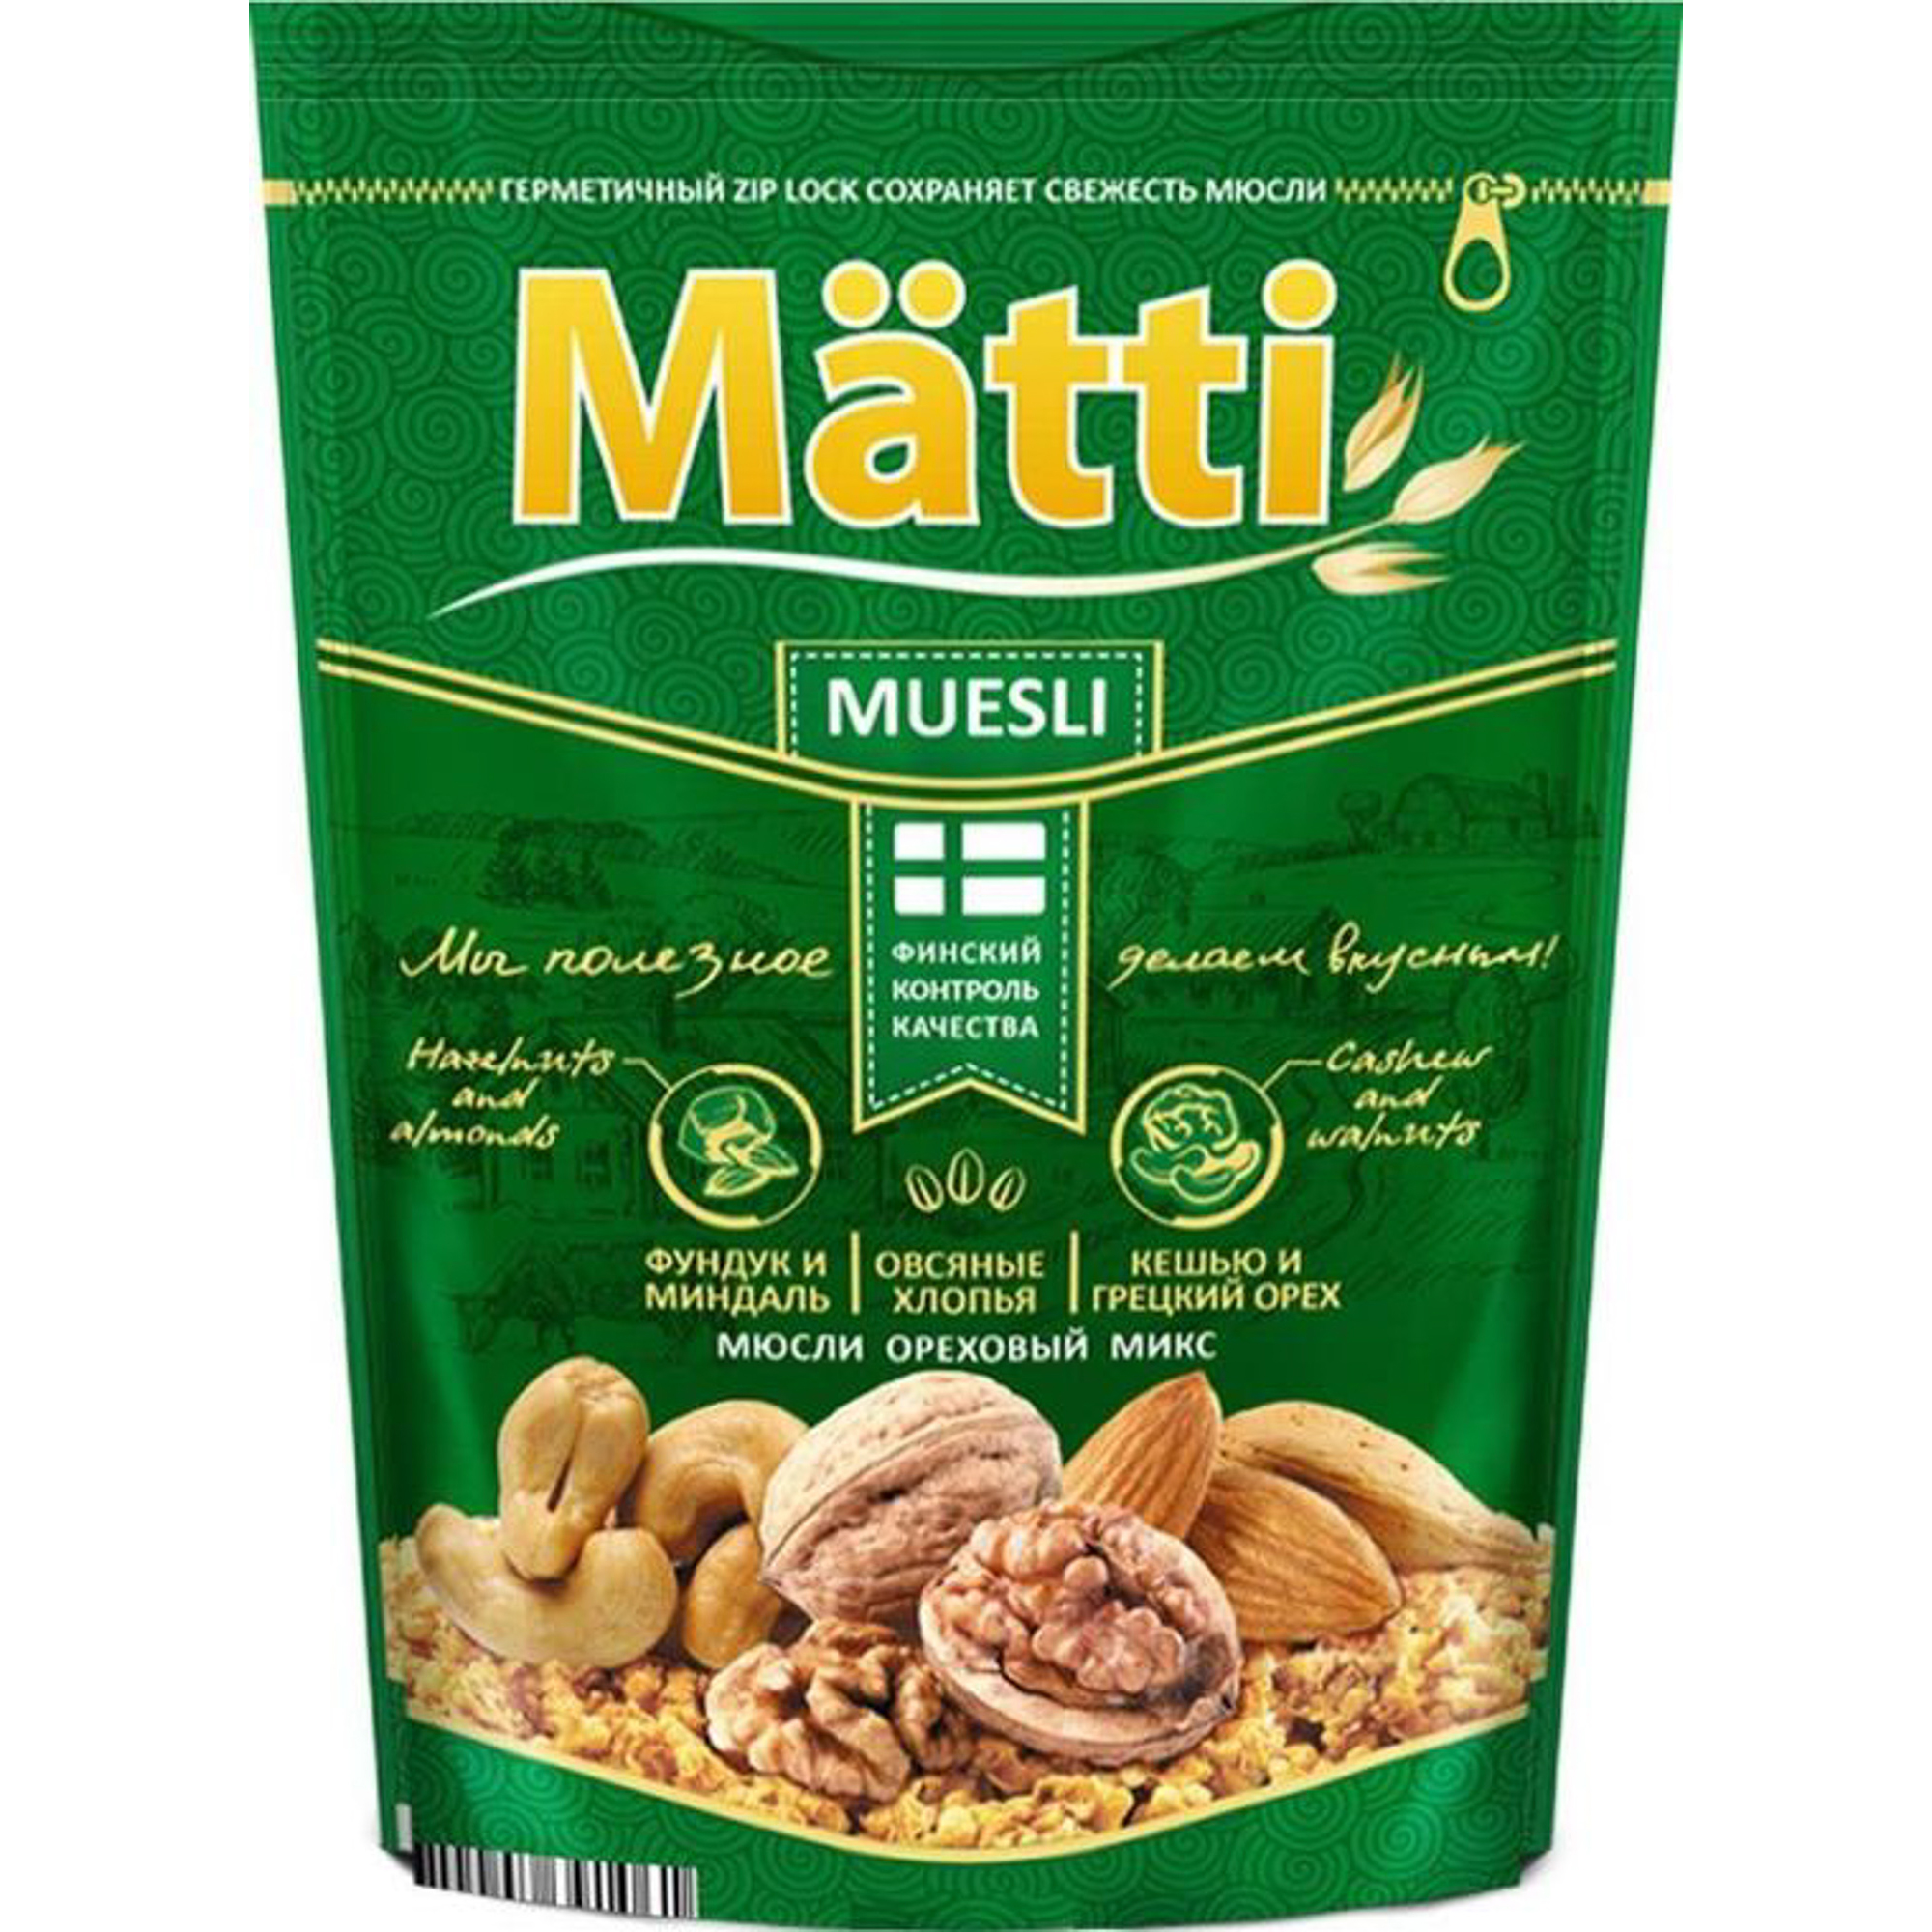 Мюсли Matti ореховый микс 250 г мюсли metro chef хрустящие с кусочками фруктов 1 кг